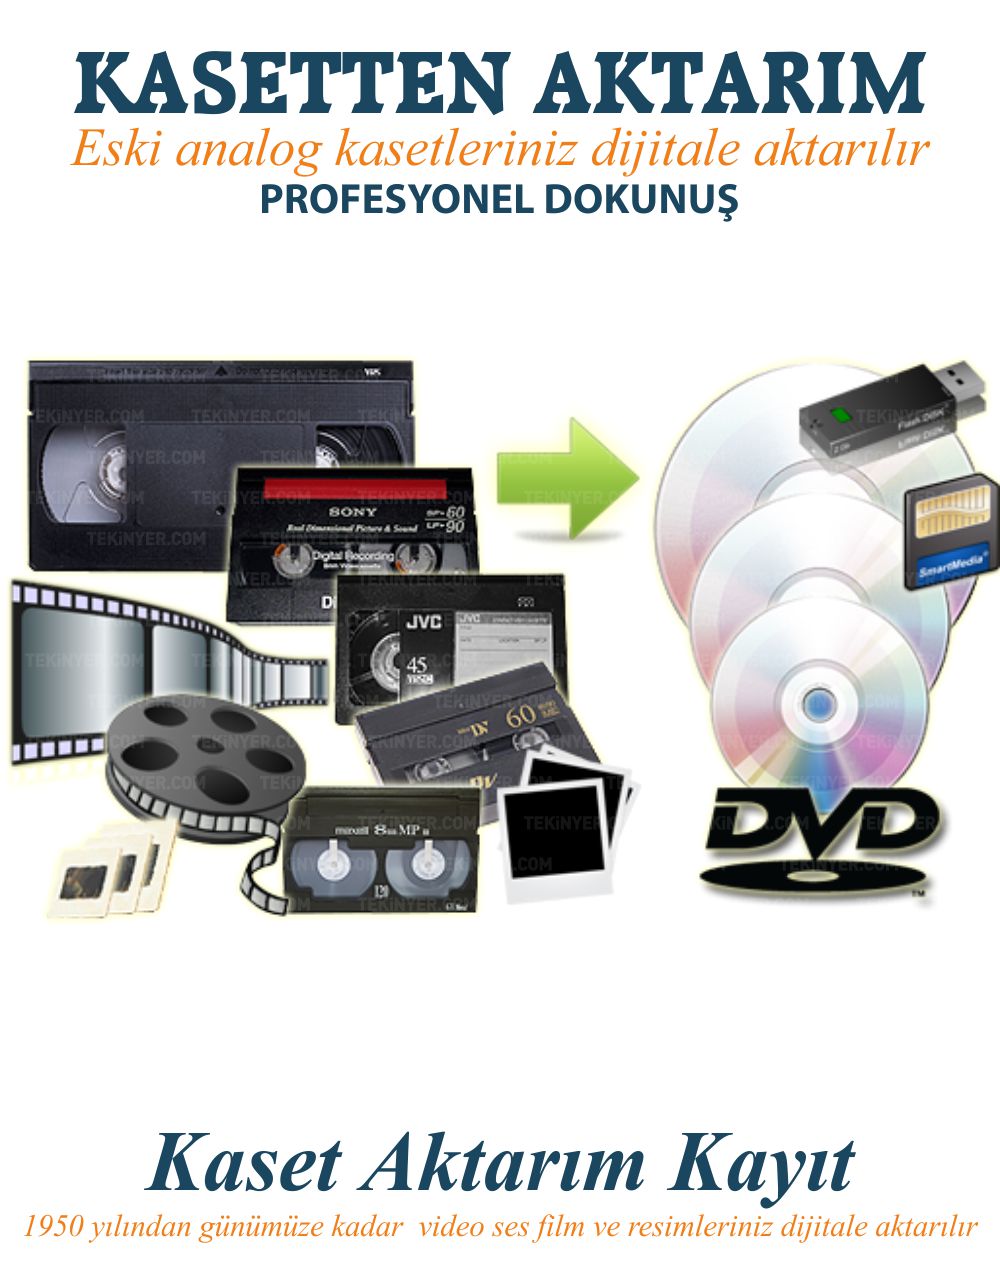 Video Kasetten DVD ye Kayıt